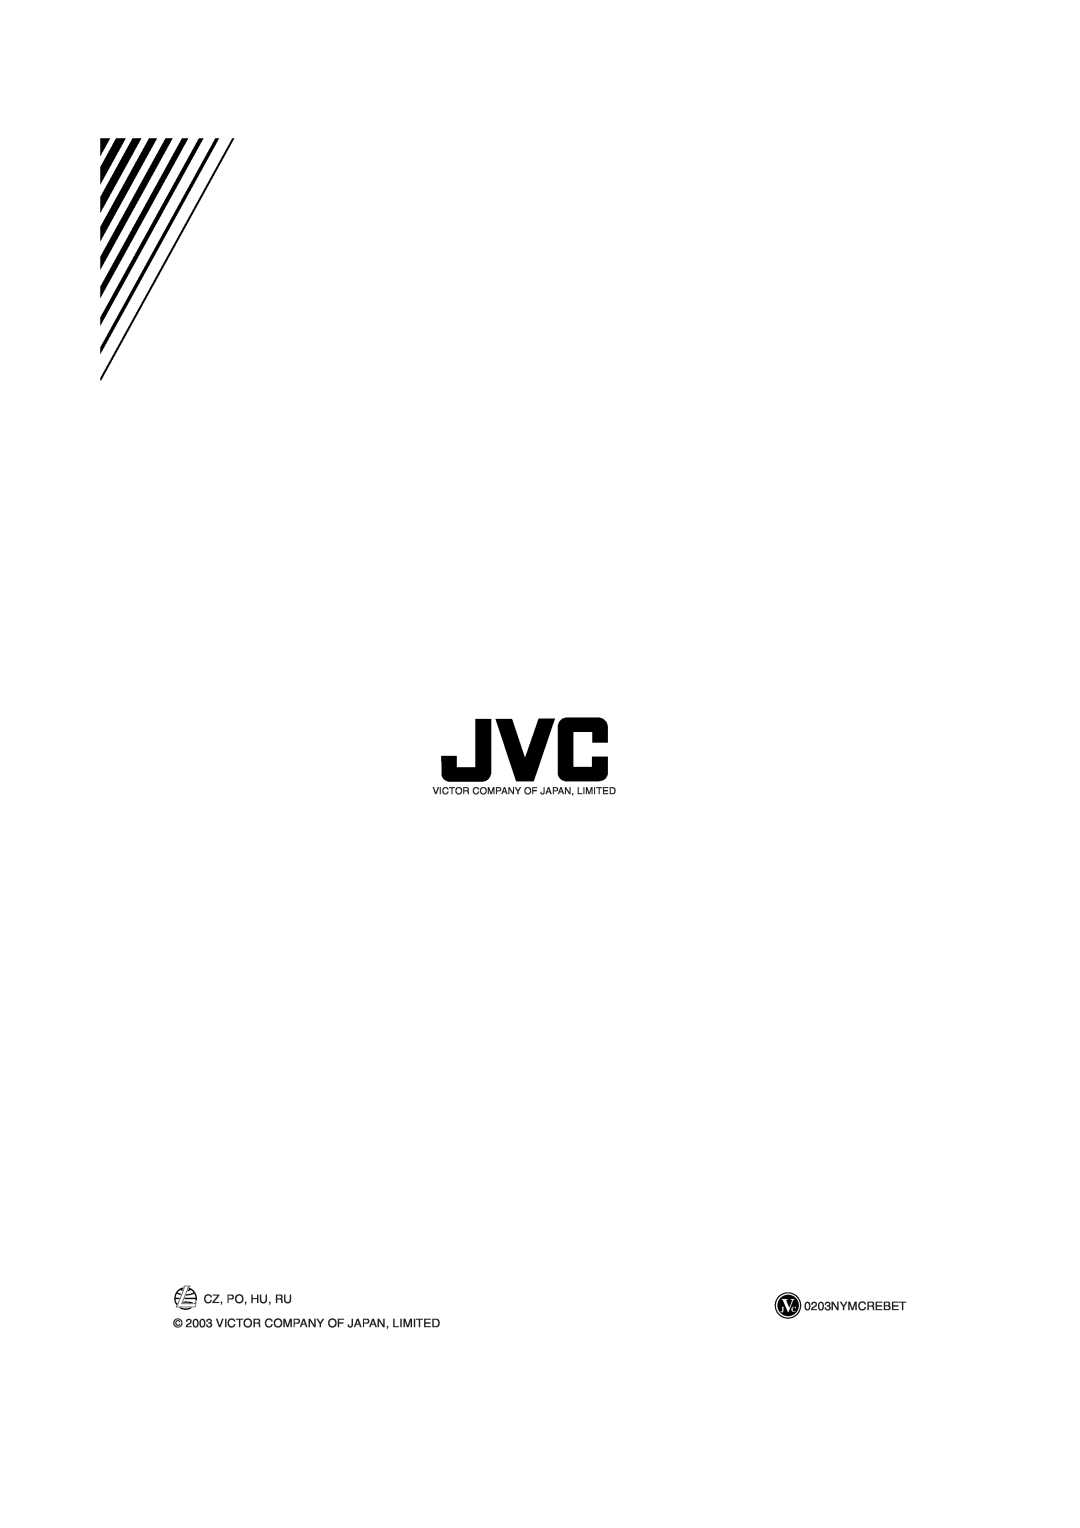 JVC MX-KA33 manual CZ, PO, HU, RU 0203NYMCREBET, Victor Company Of Japan, Limited 